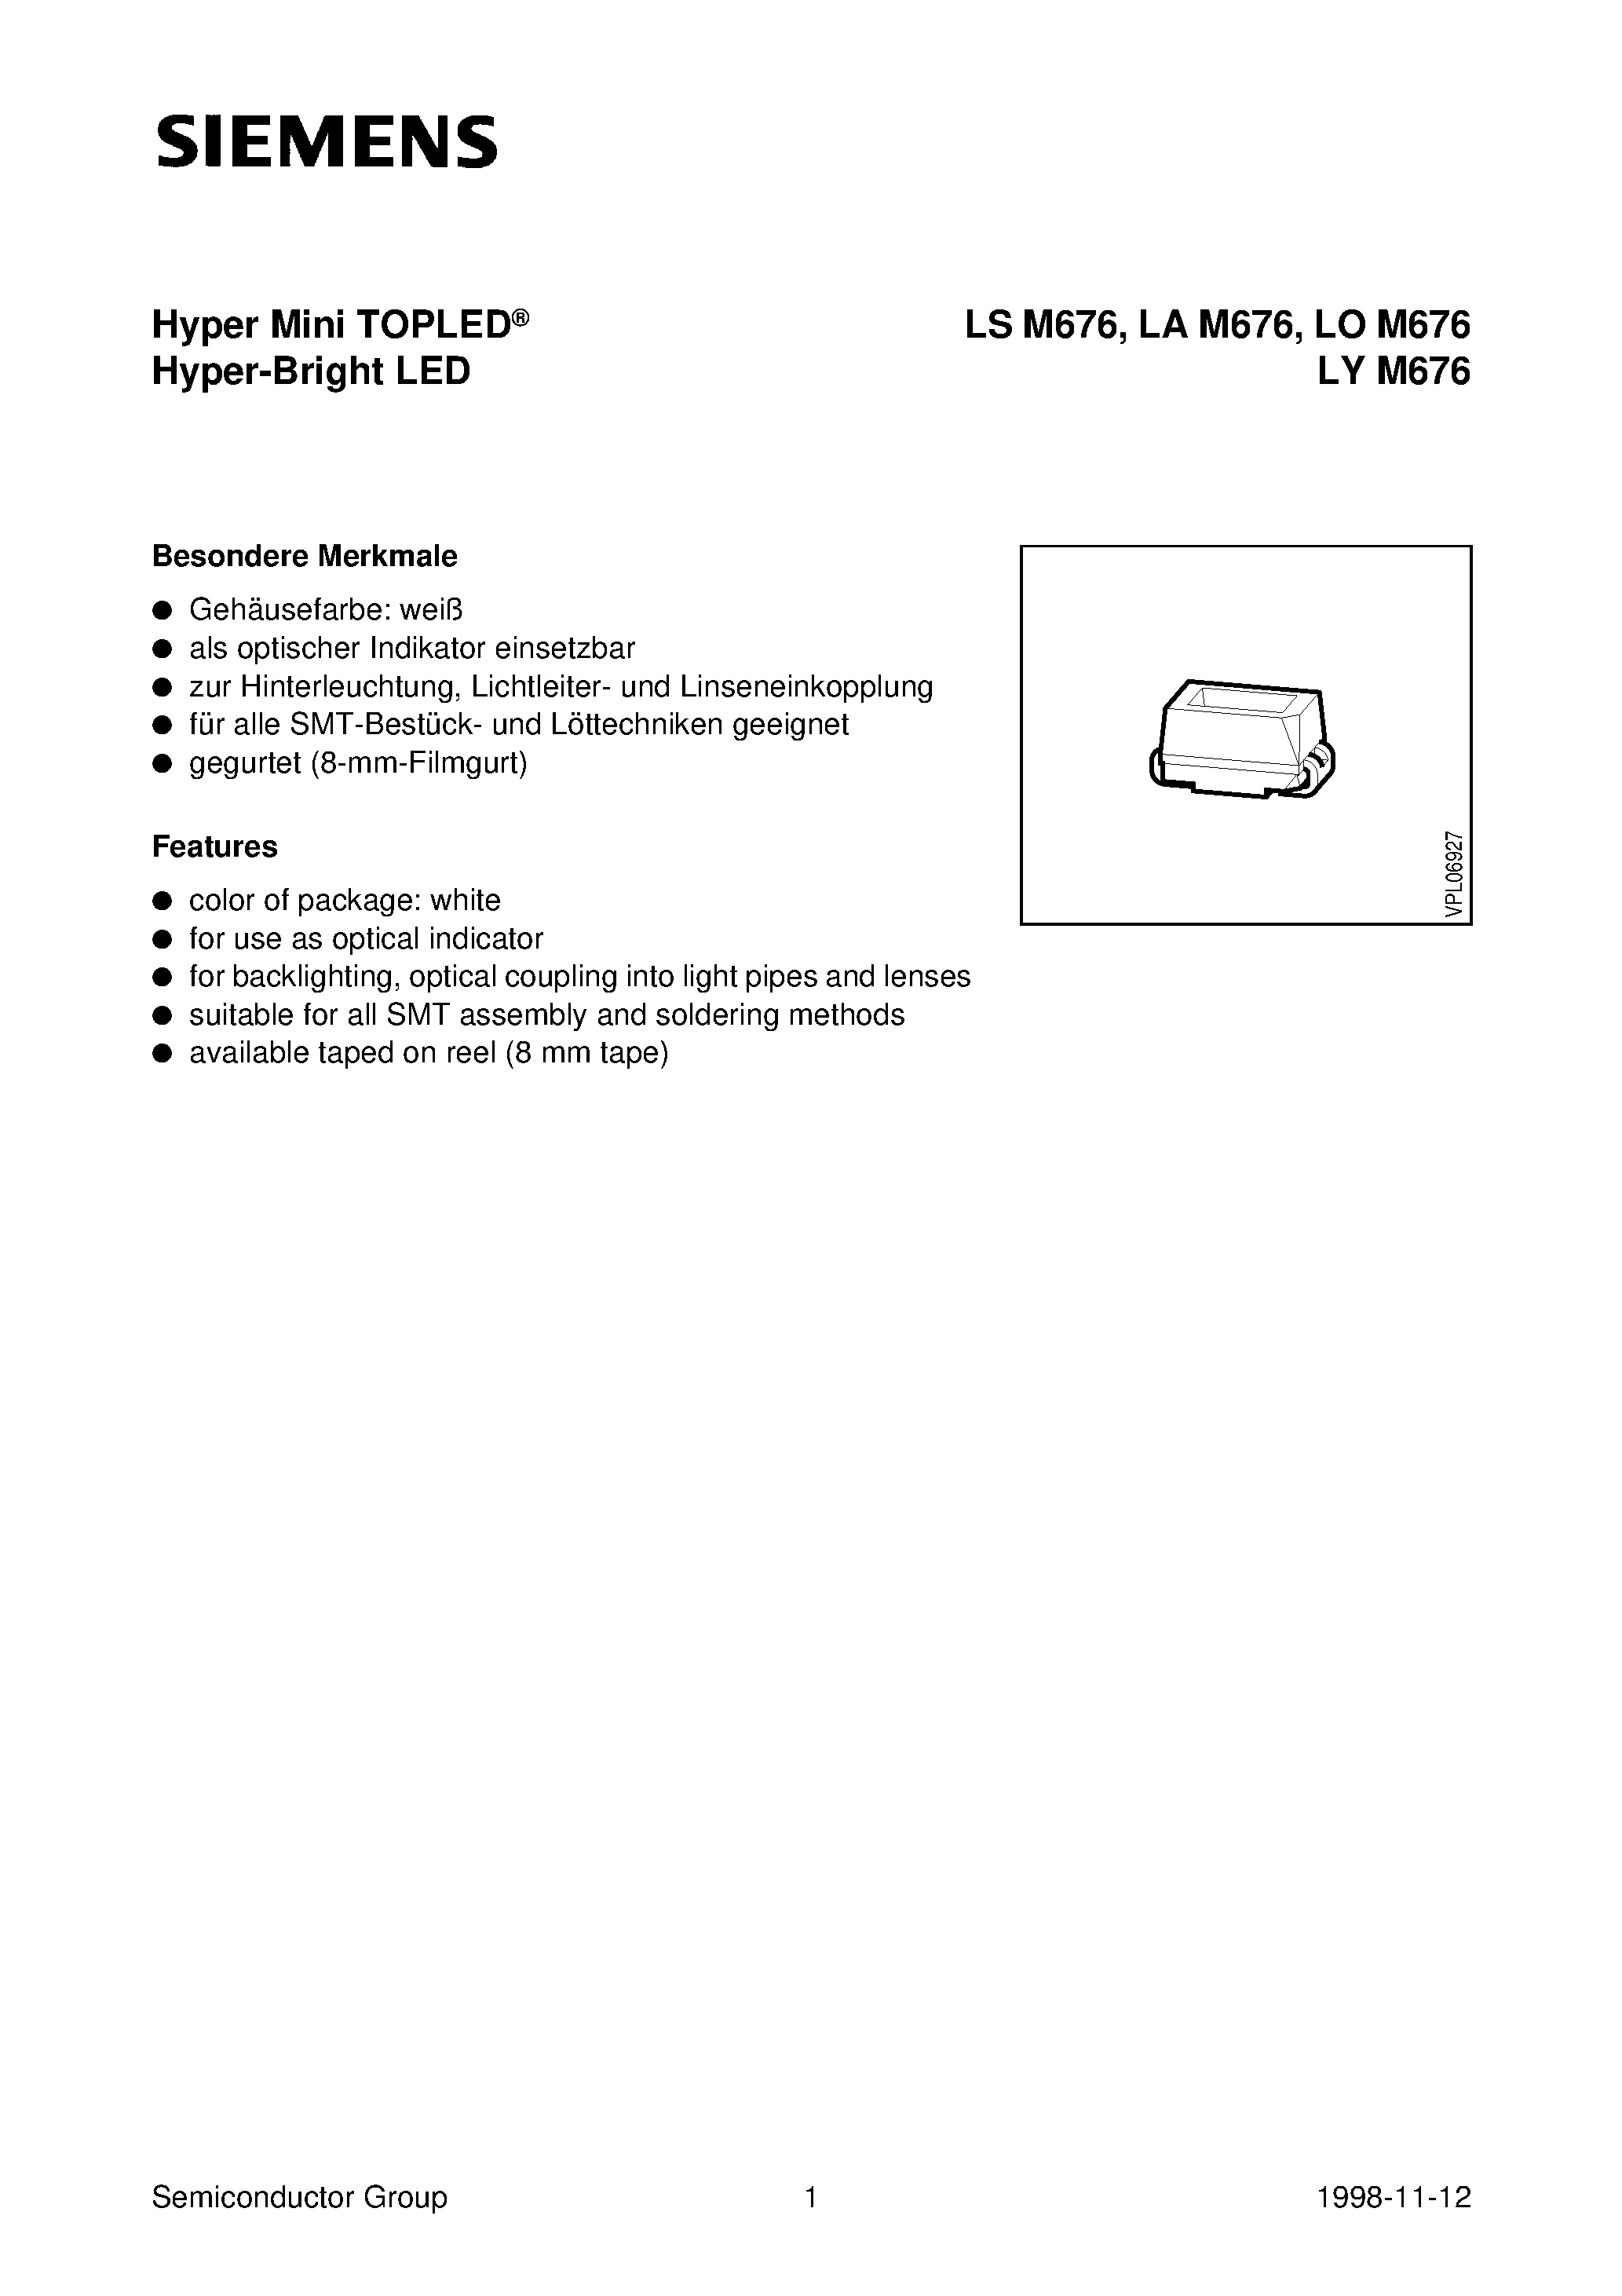 Даташит LAM676-Q - Hyper Mini TOPLED Hyper-Bright LED страница 1